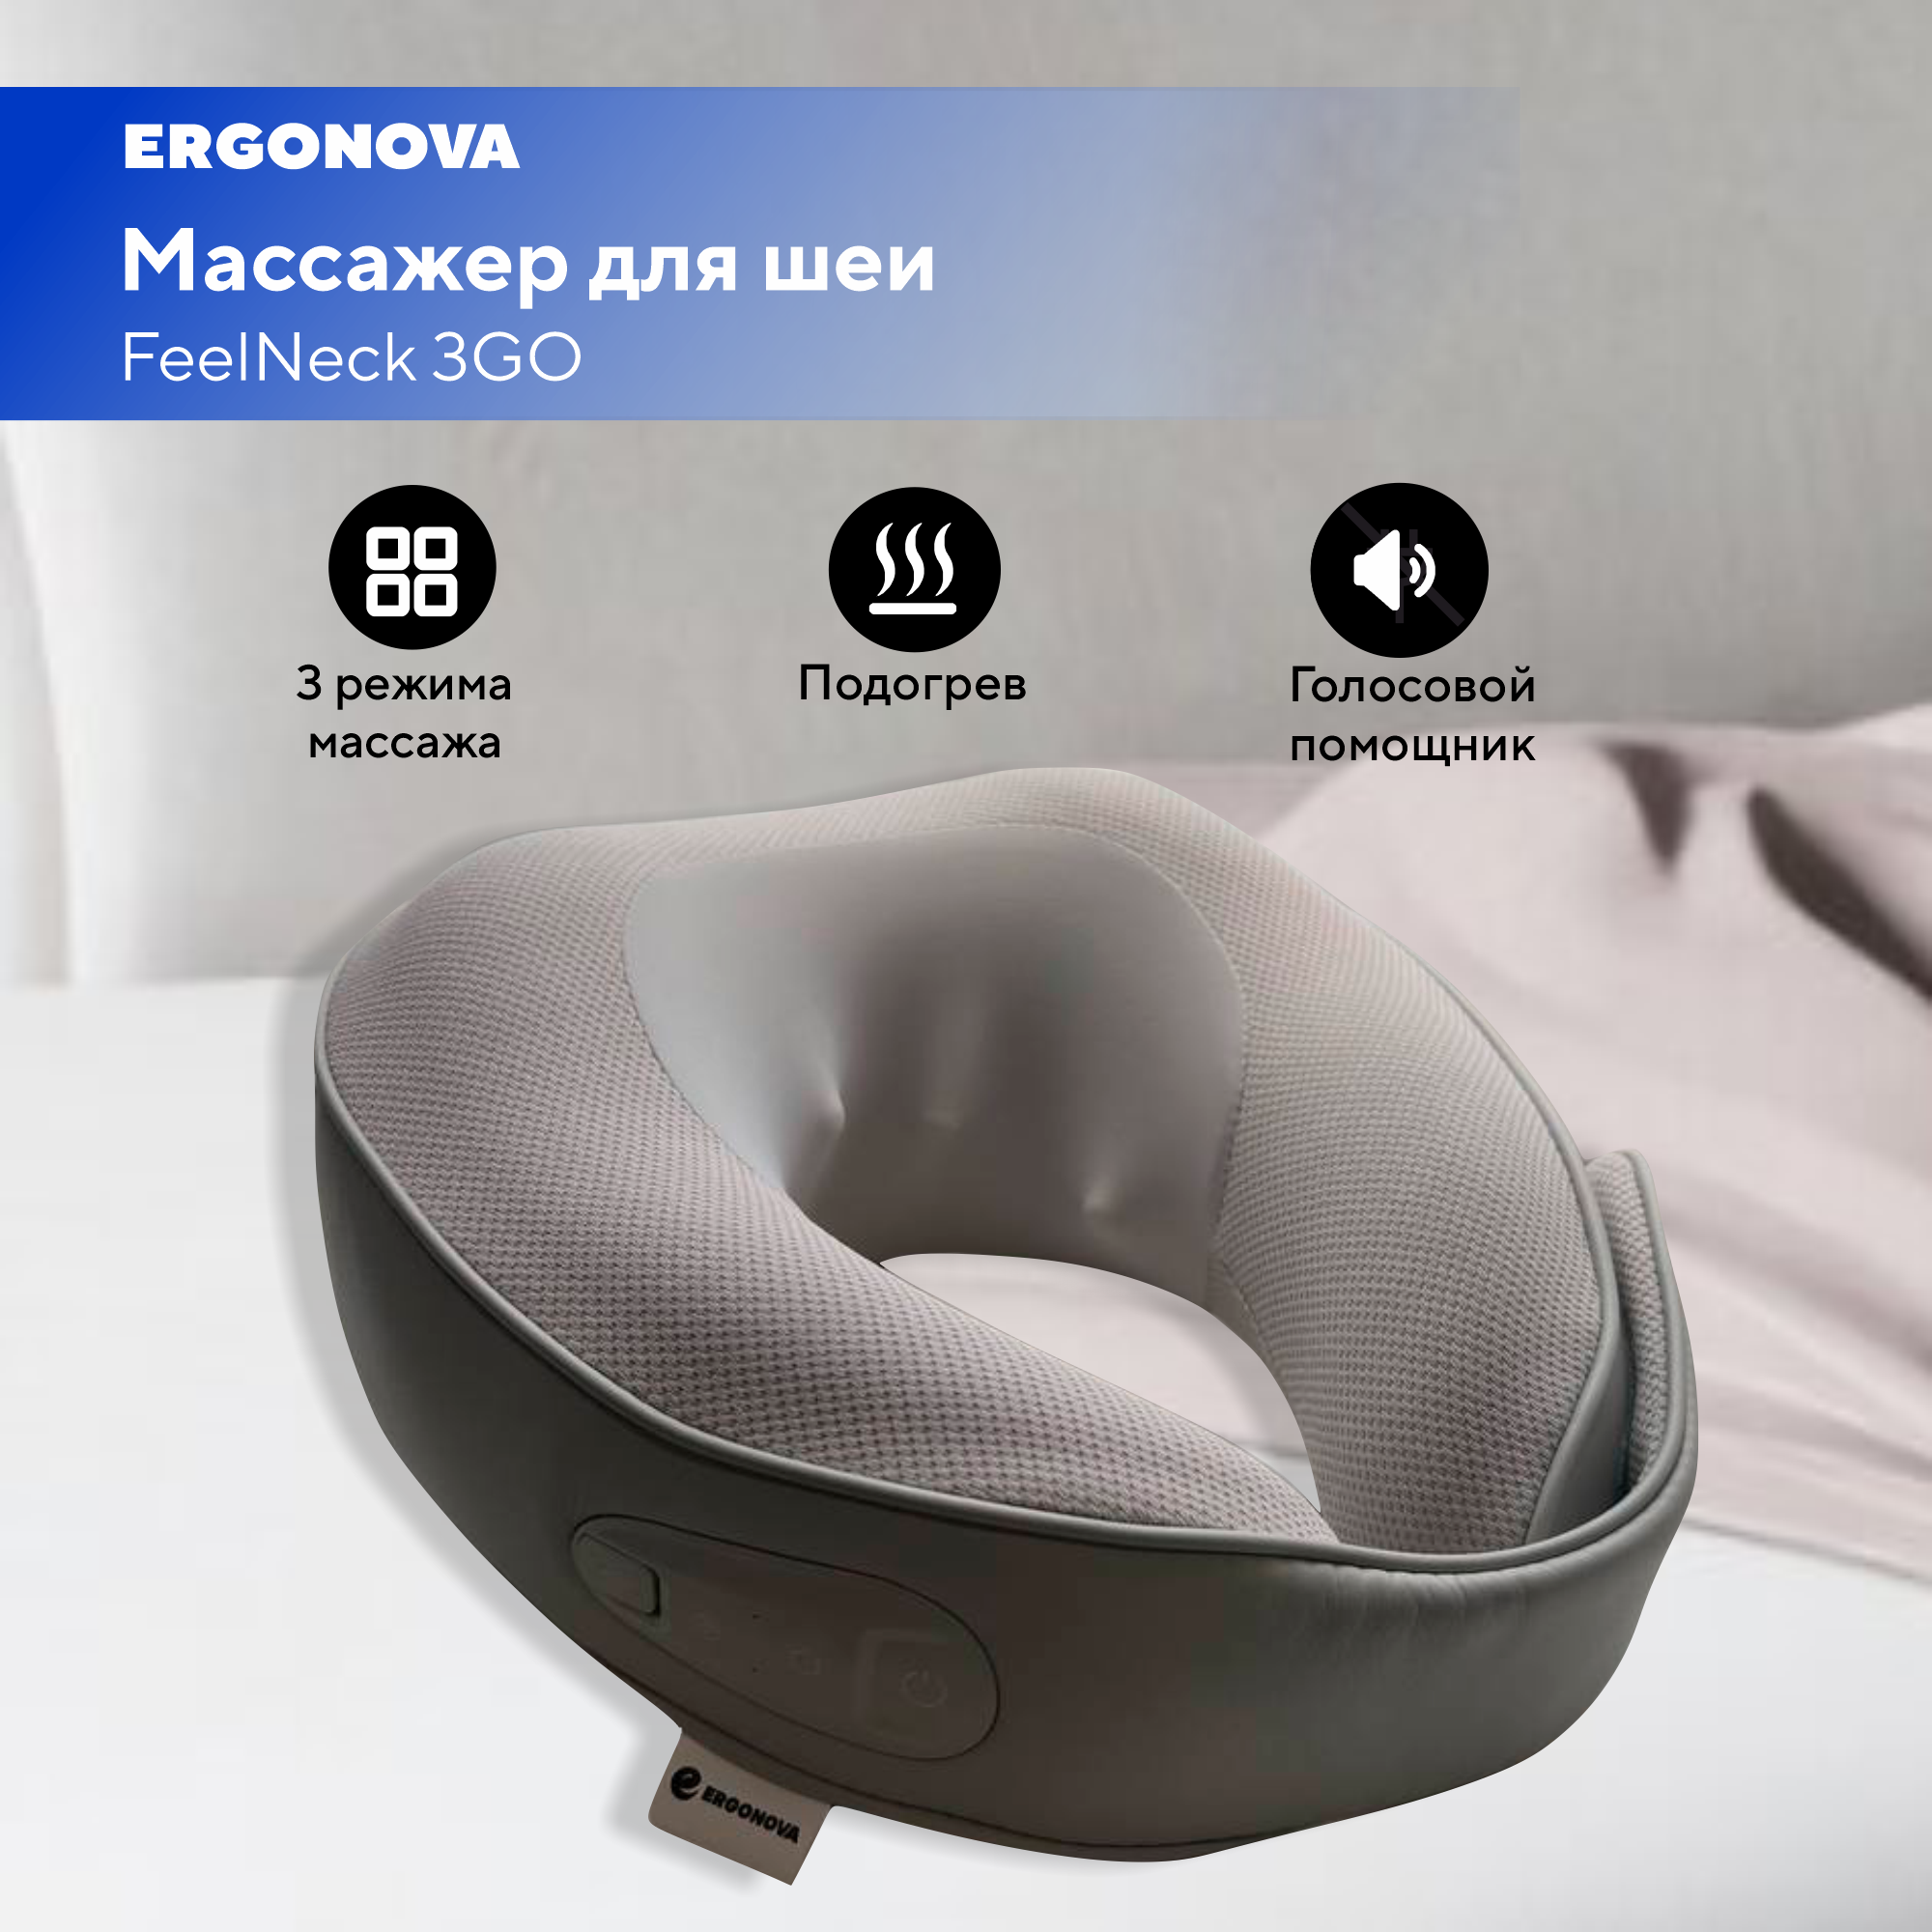 Массажер для шеи Ergonova FeelNeck 3GO с роликовым и вибрационным массажем